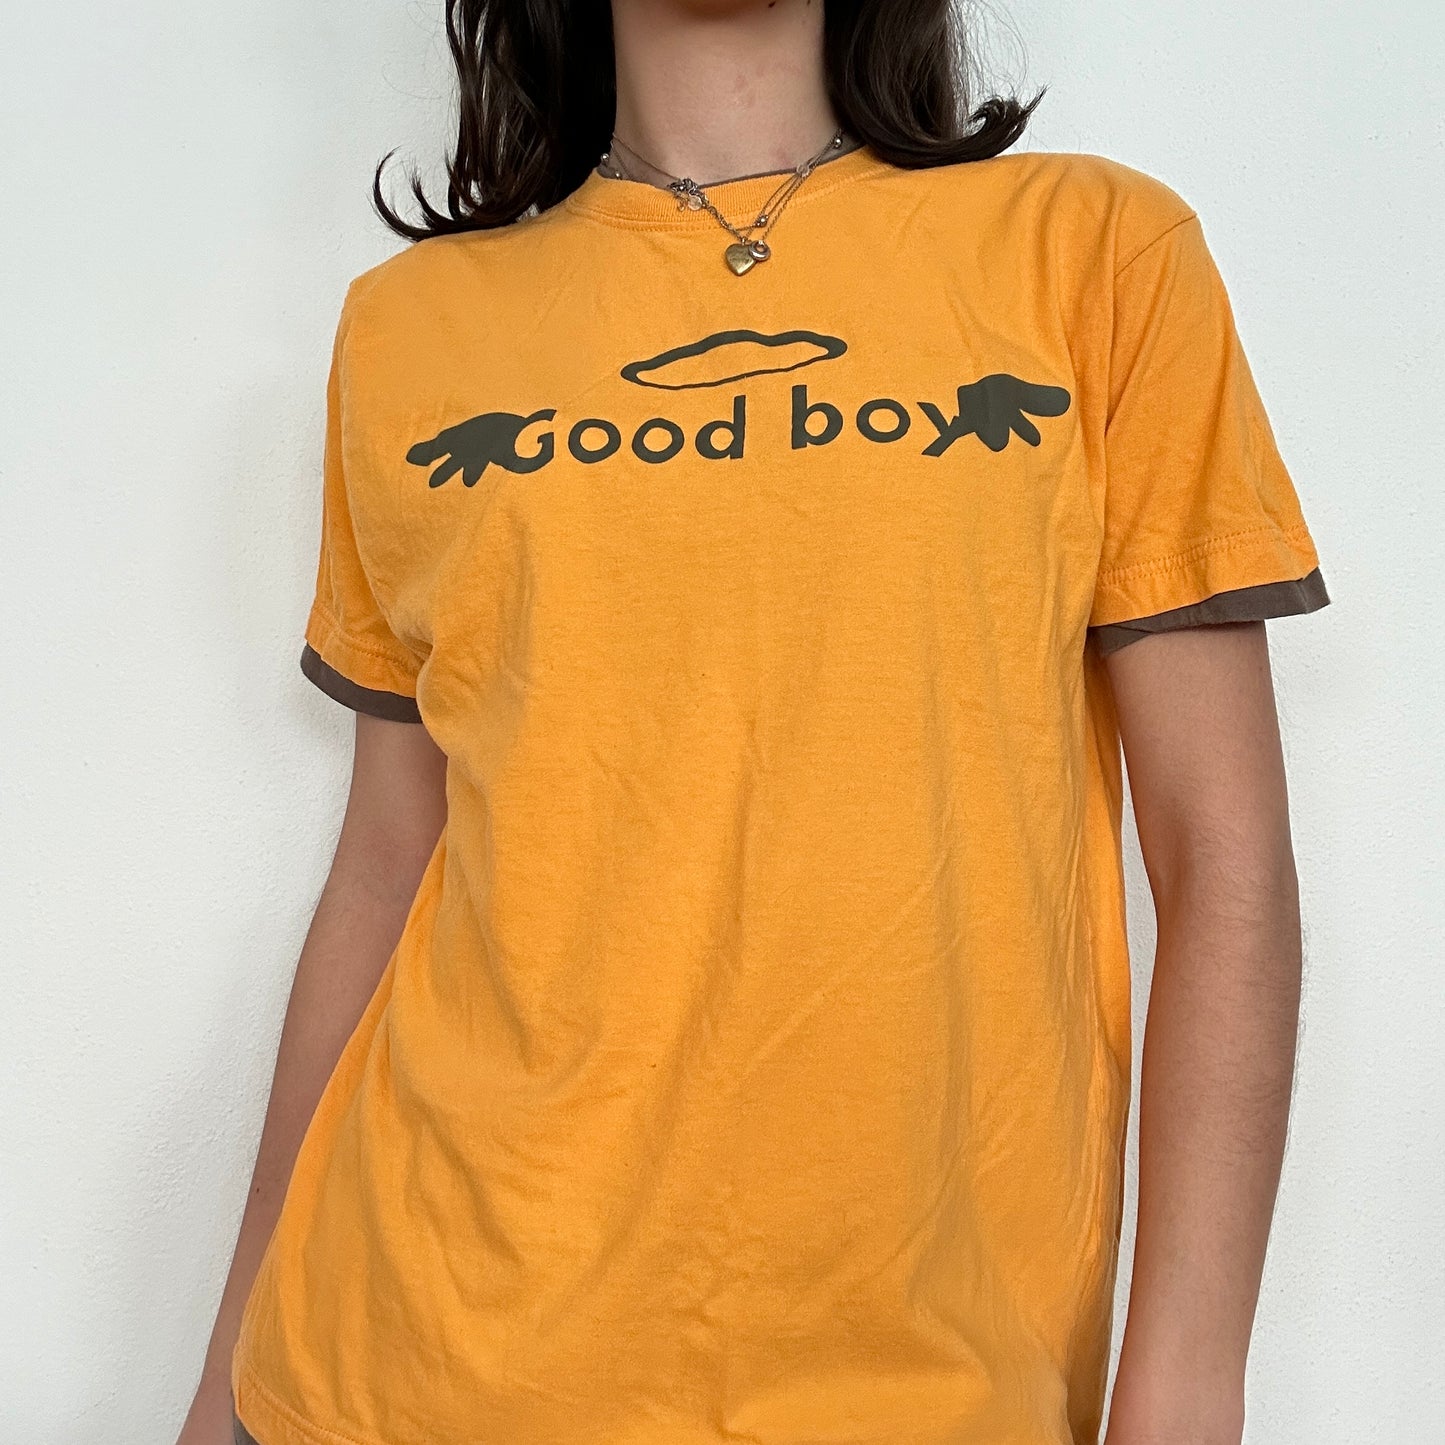 Vintage "Good boy" Graphic Print Tshirt